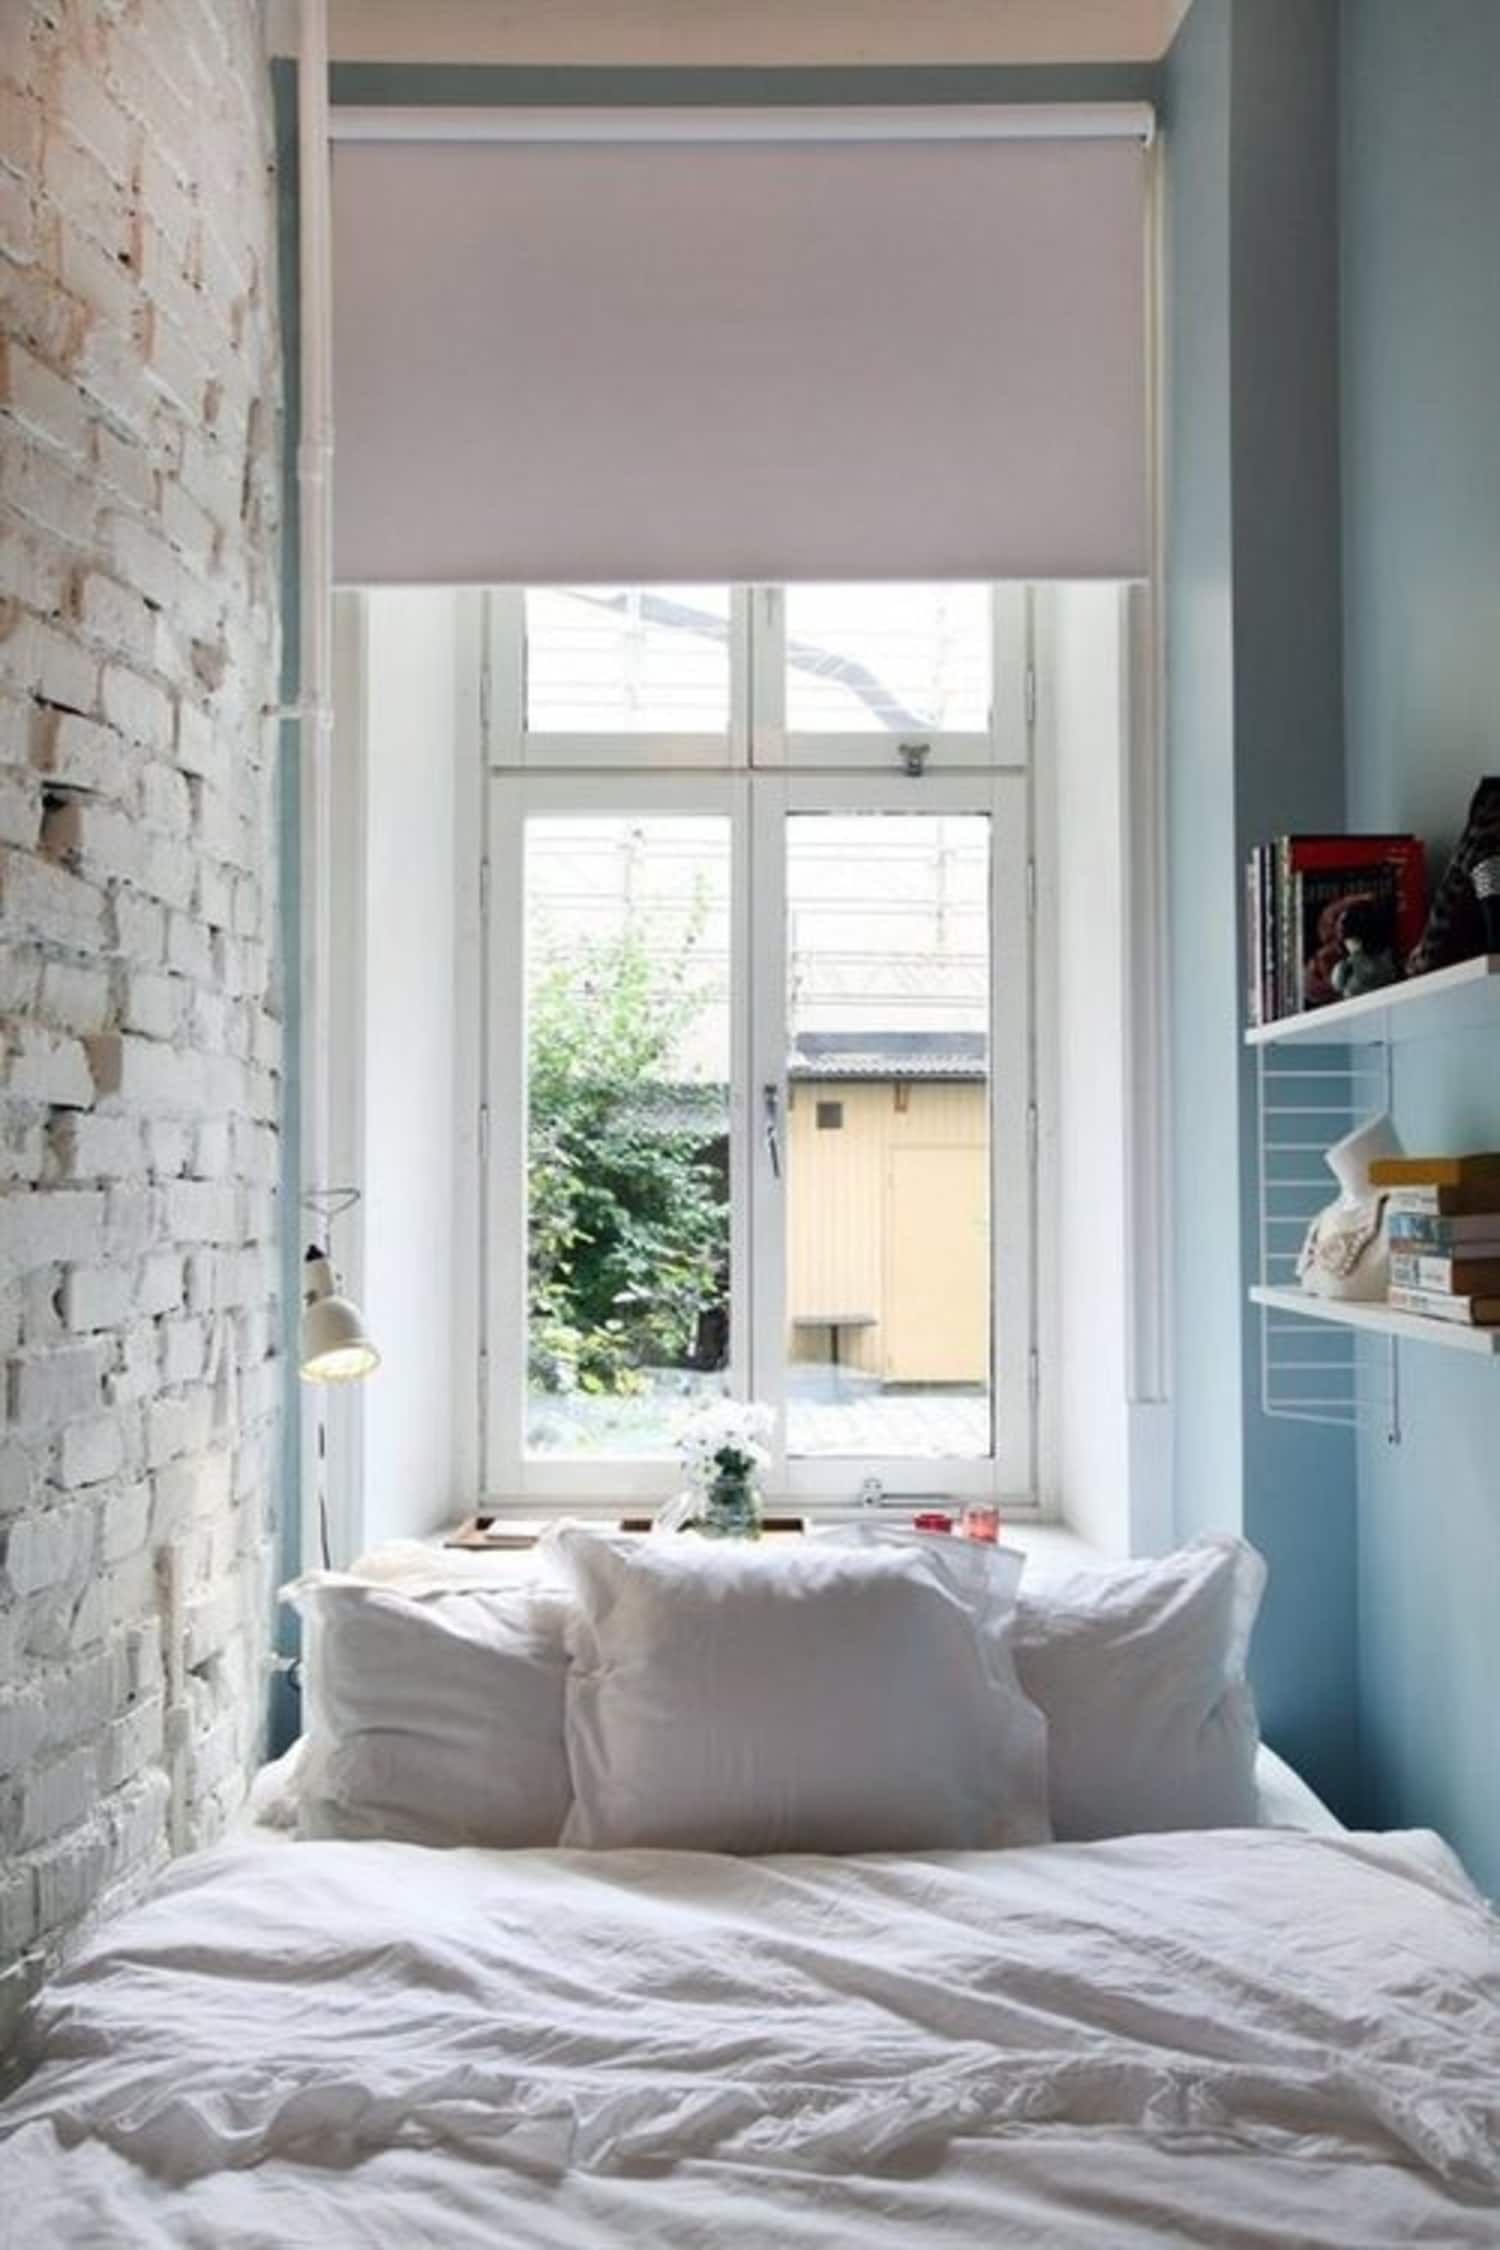 Không gian phòng ngủ siêu nhỏ sở hữu ô cửa xinh xắn và bức tường gạch sơn trắng cho cảm giác mời gọi. Mặc dù diện tích “khiêm tốn” nhưng trông nó rất mời gọi và quyến rũ.